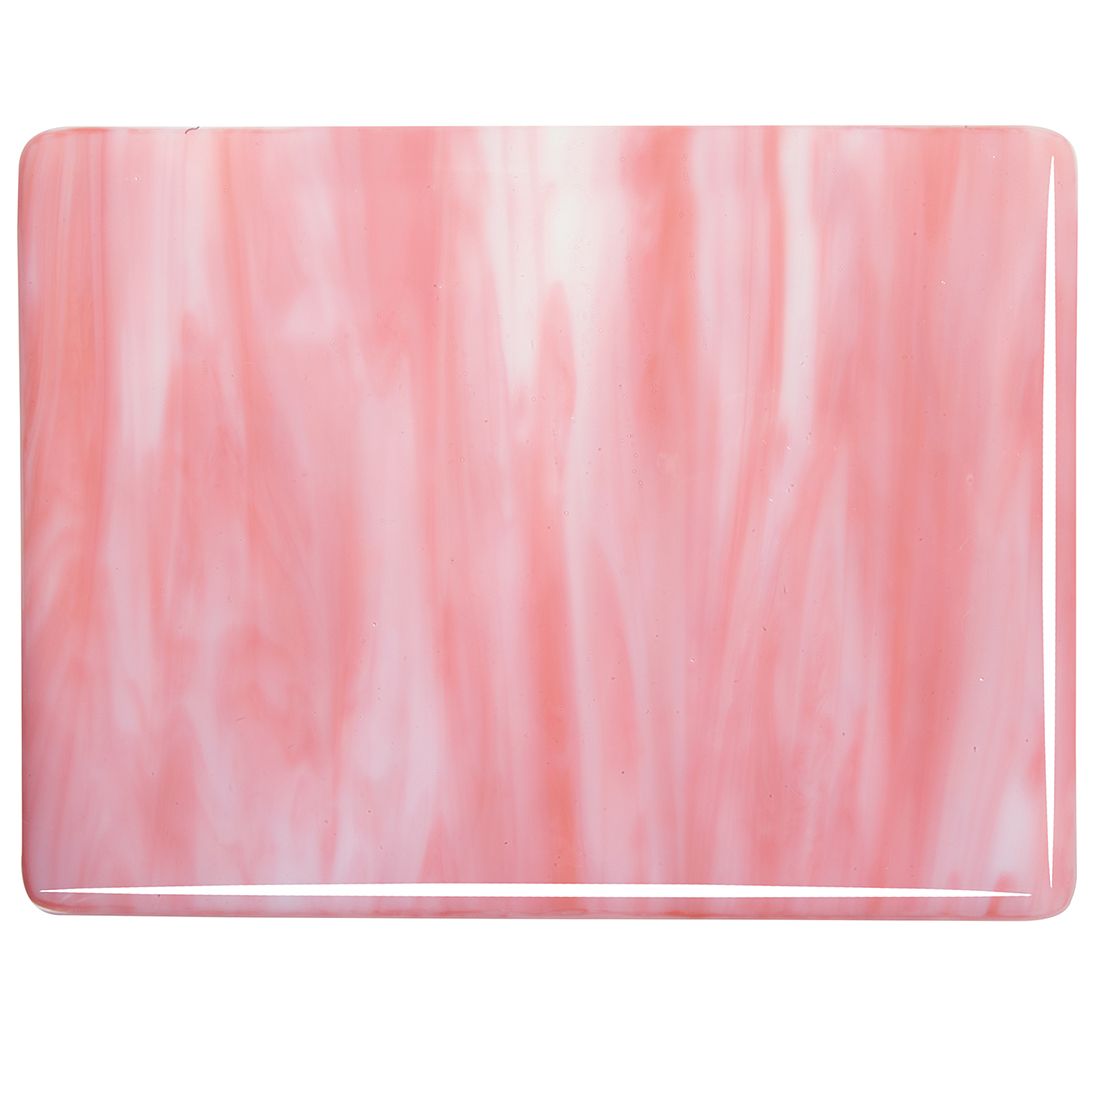 Bullseye Glass - 2305 - Salmon Pink Opal & White Opal Streaky 90coe